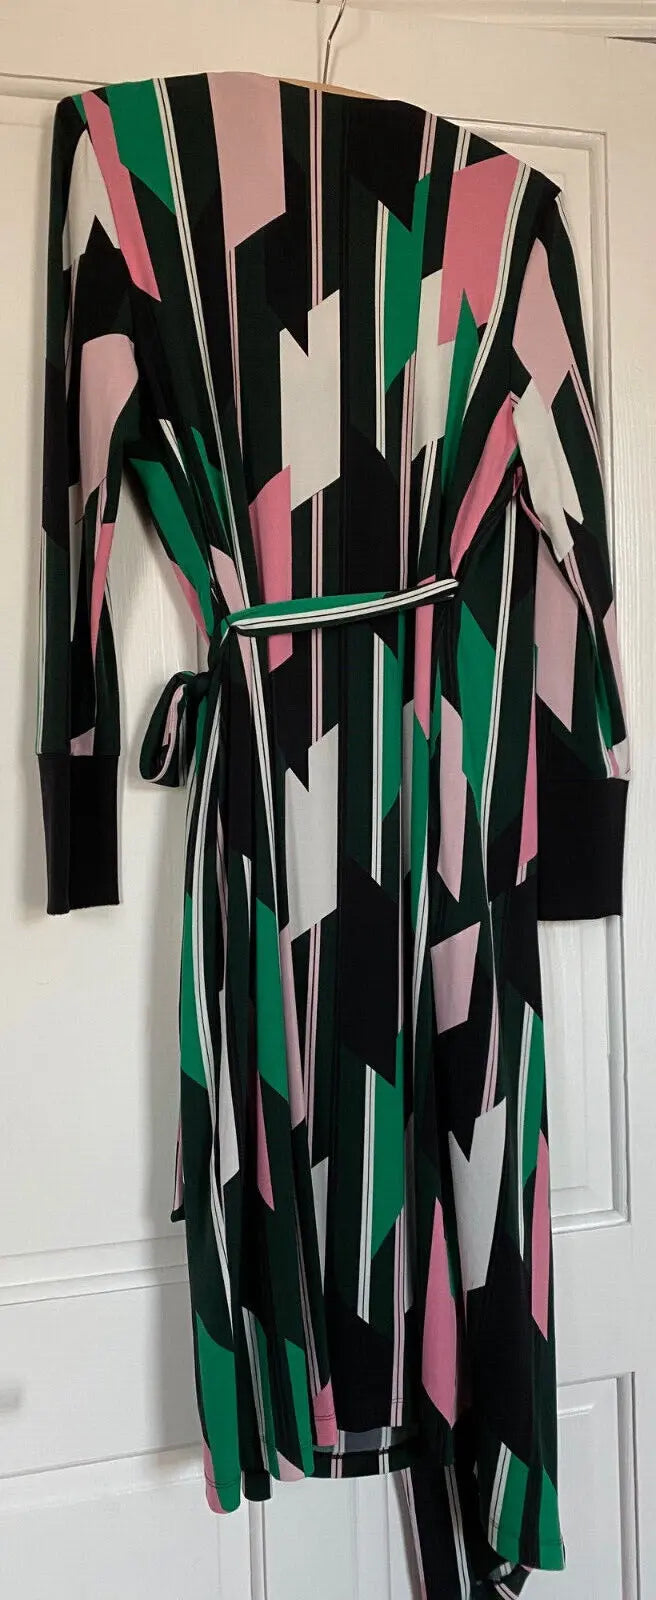 M & S Geometric Pink, Green, Black and White Wrap Dress Size 12 Cherchez La Femme brand